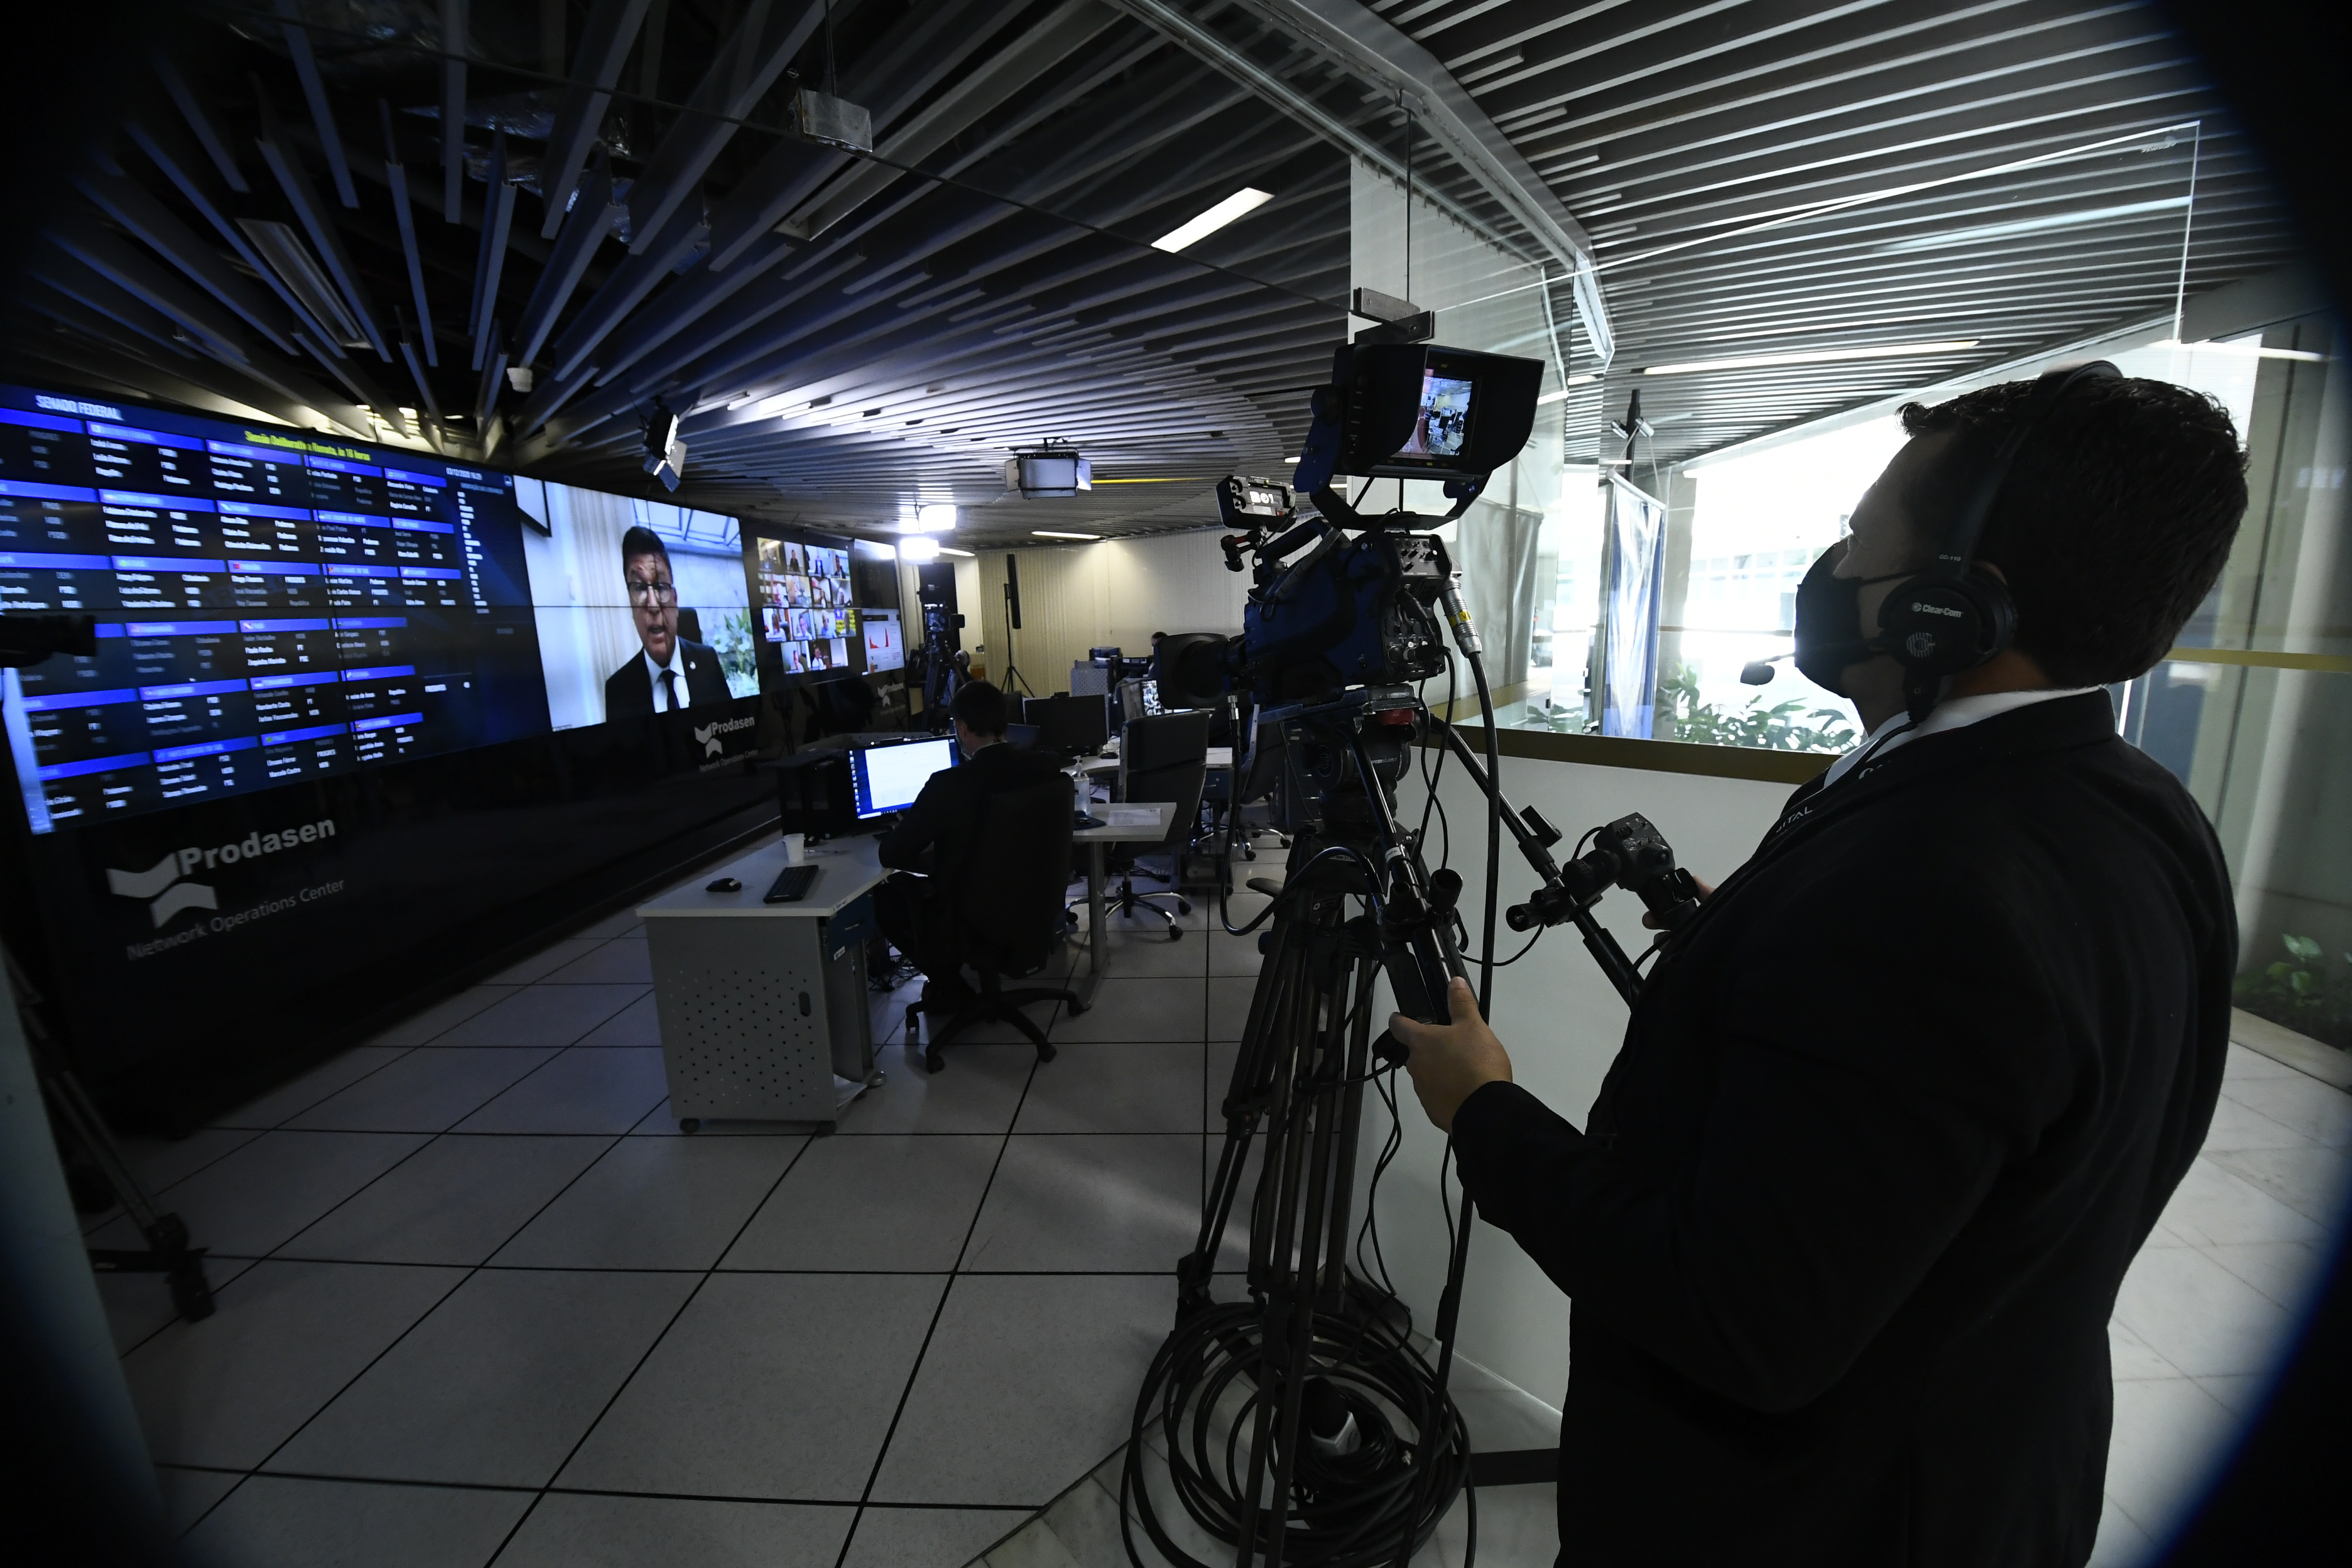 Cinegrafista da TV Senado filma sessão no "bunker" do Prodasen (Foto: Marcos Oliveira/Agência Senado)